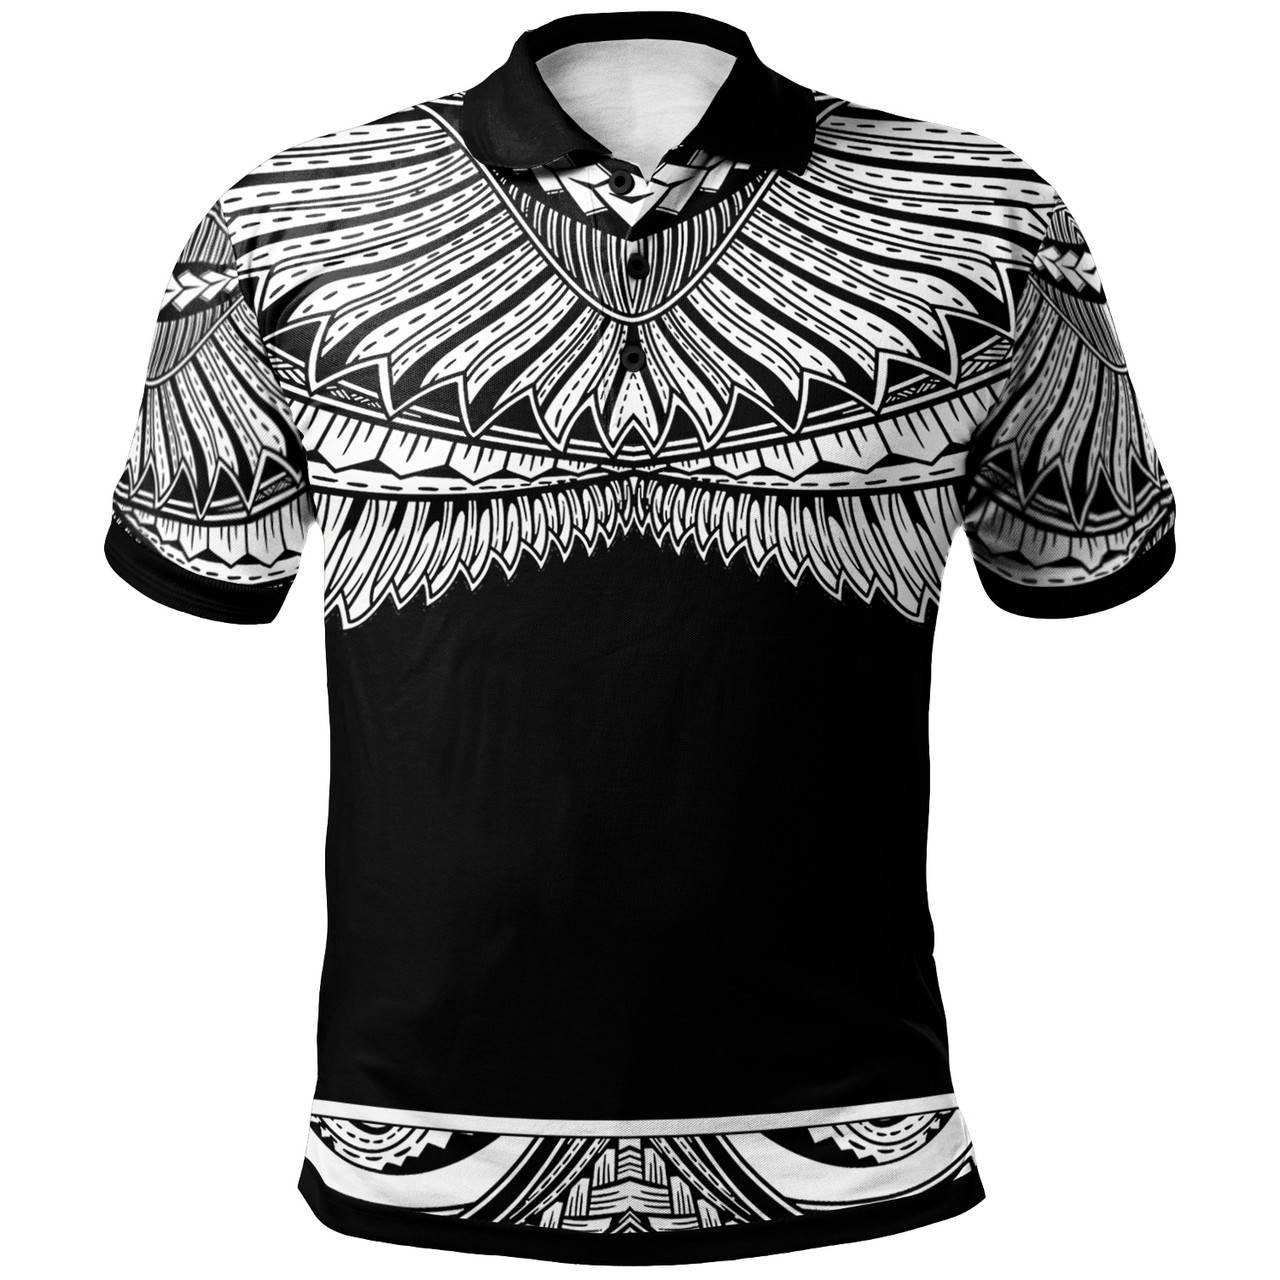 Pohnpei Polynesian Polo Shirt - Poly Tattoo White Version